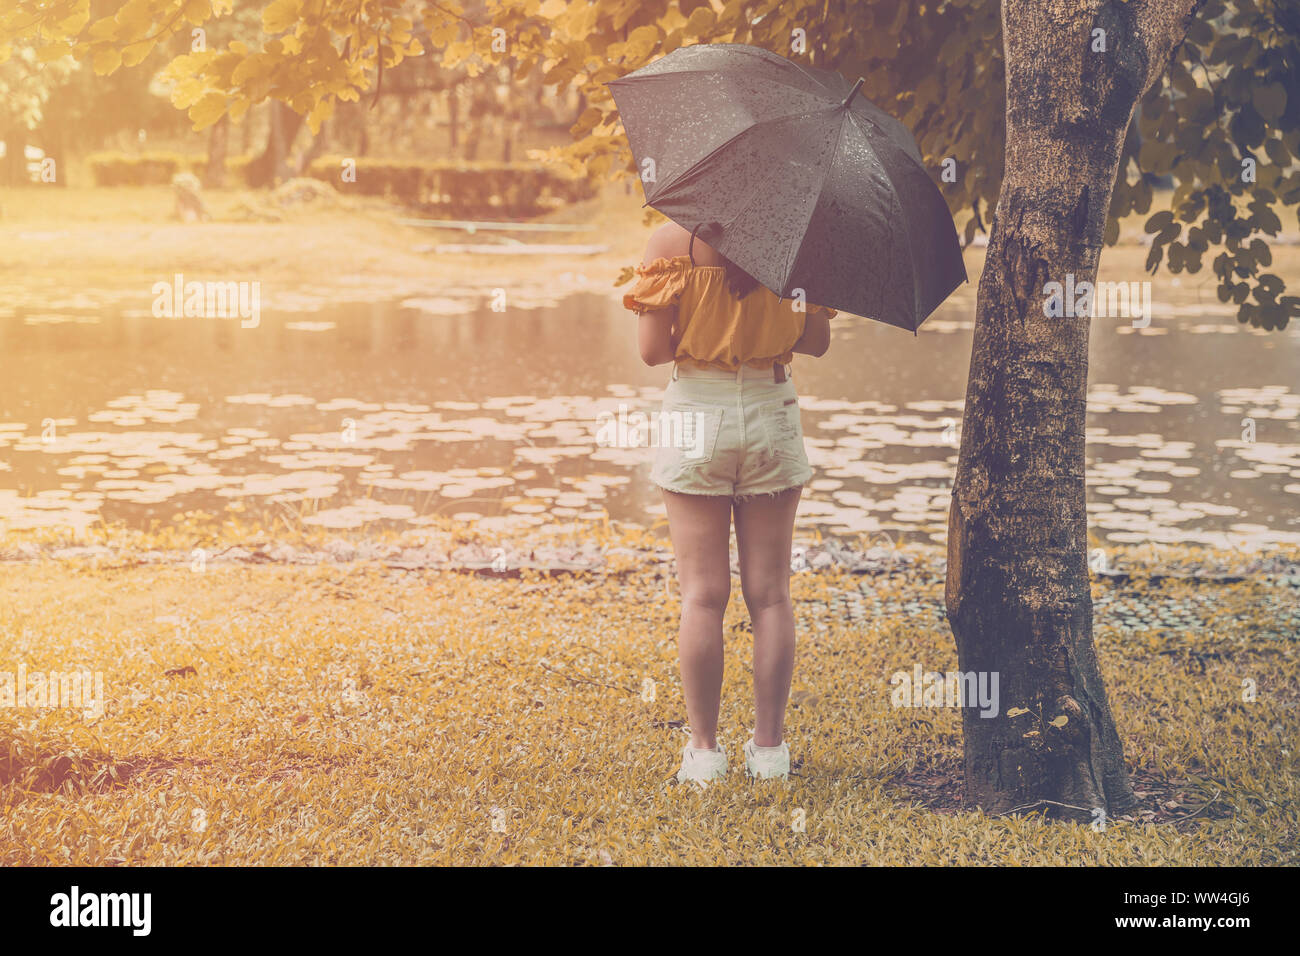 La solitudine adolescente giovane ragazza stand alone in giornata piovosa con tree Park Lake con spazio di copia Foto Stock